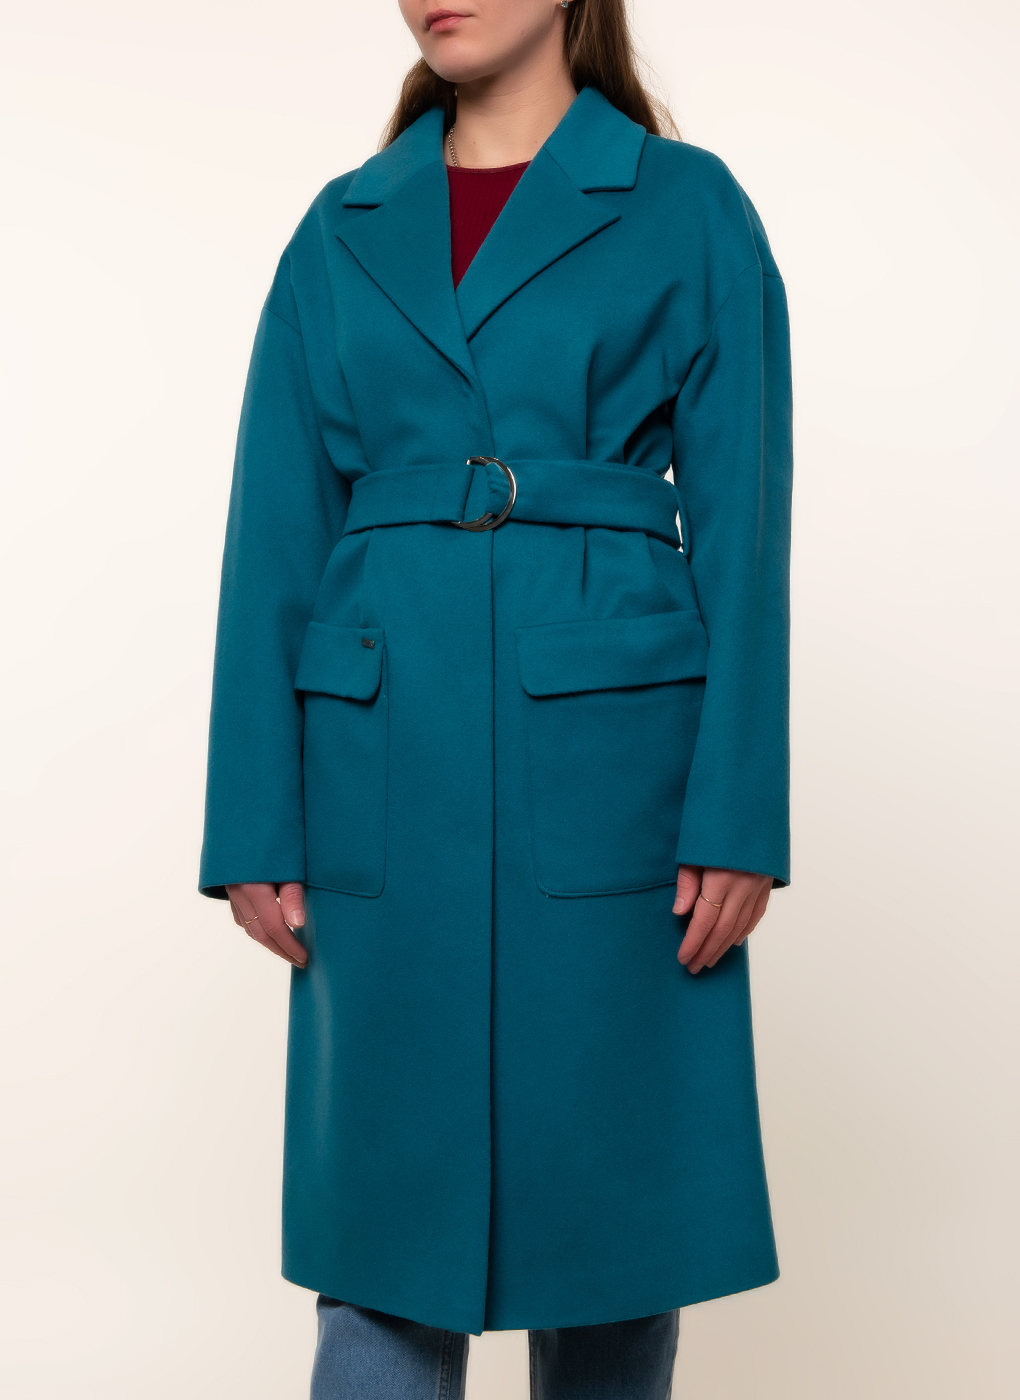 Пальто женское idekka 45536 голубое 46 RU